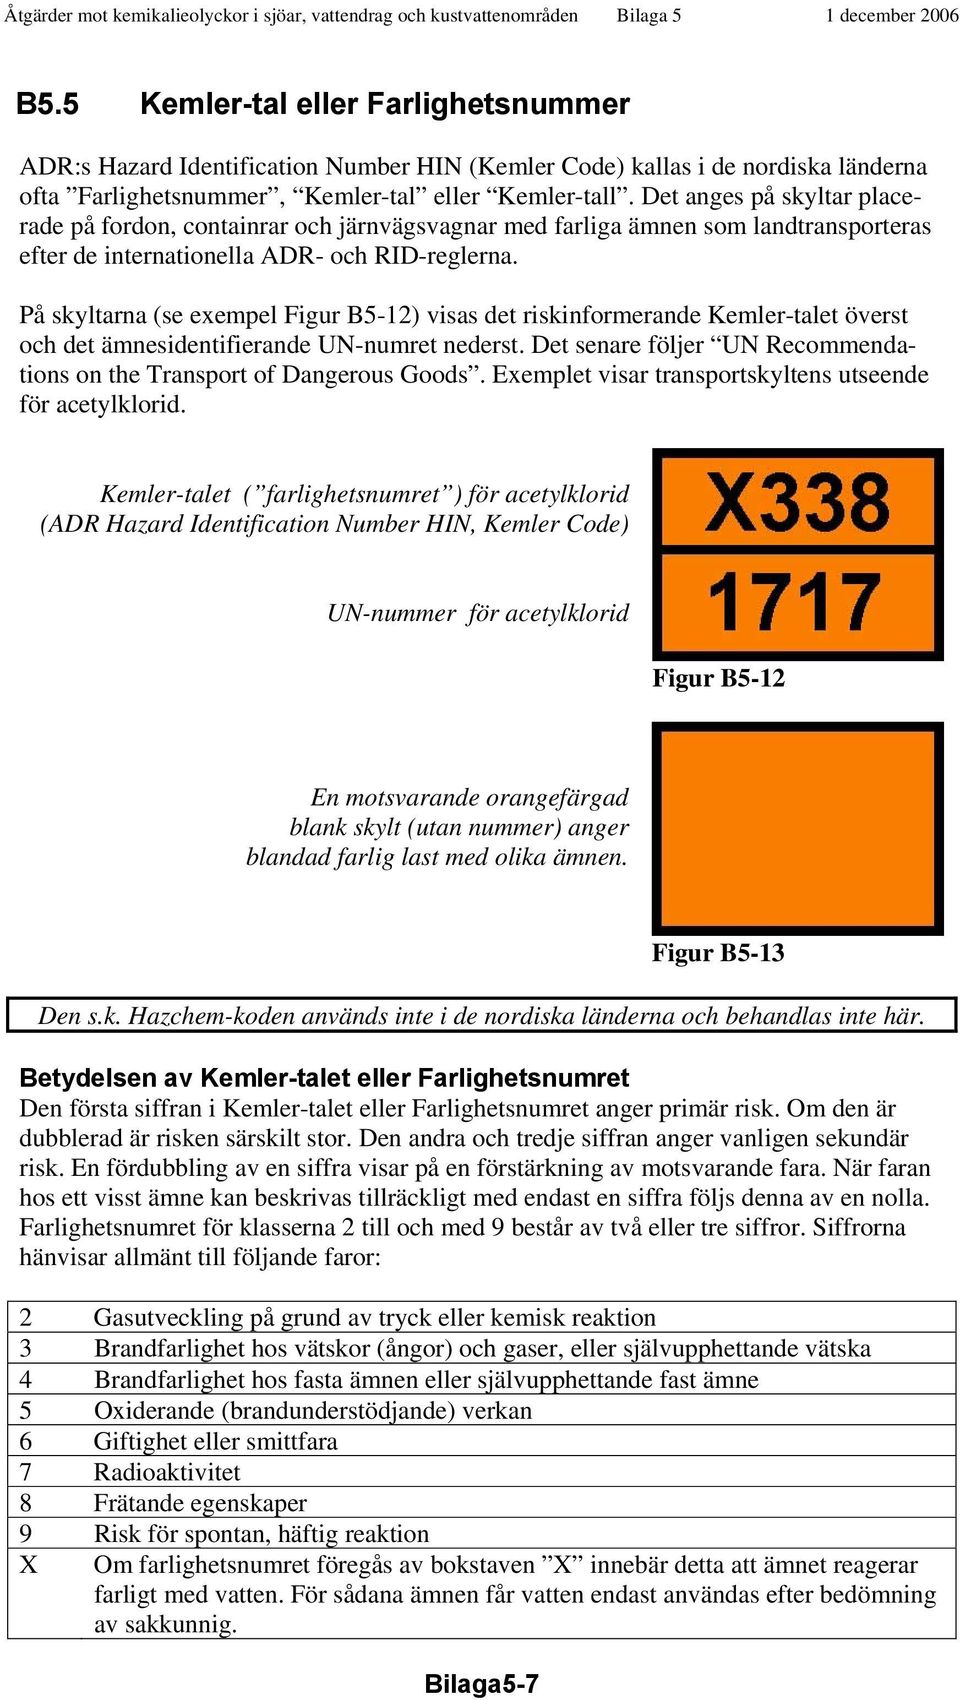 På skyltarna (se exempel Figur B5-12) visas det riskinformerande Kemler-talet överst och det ämnesidentifierande UN-numret nederst.